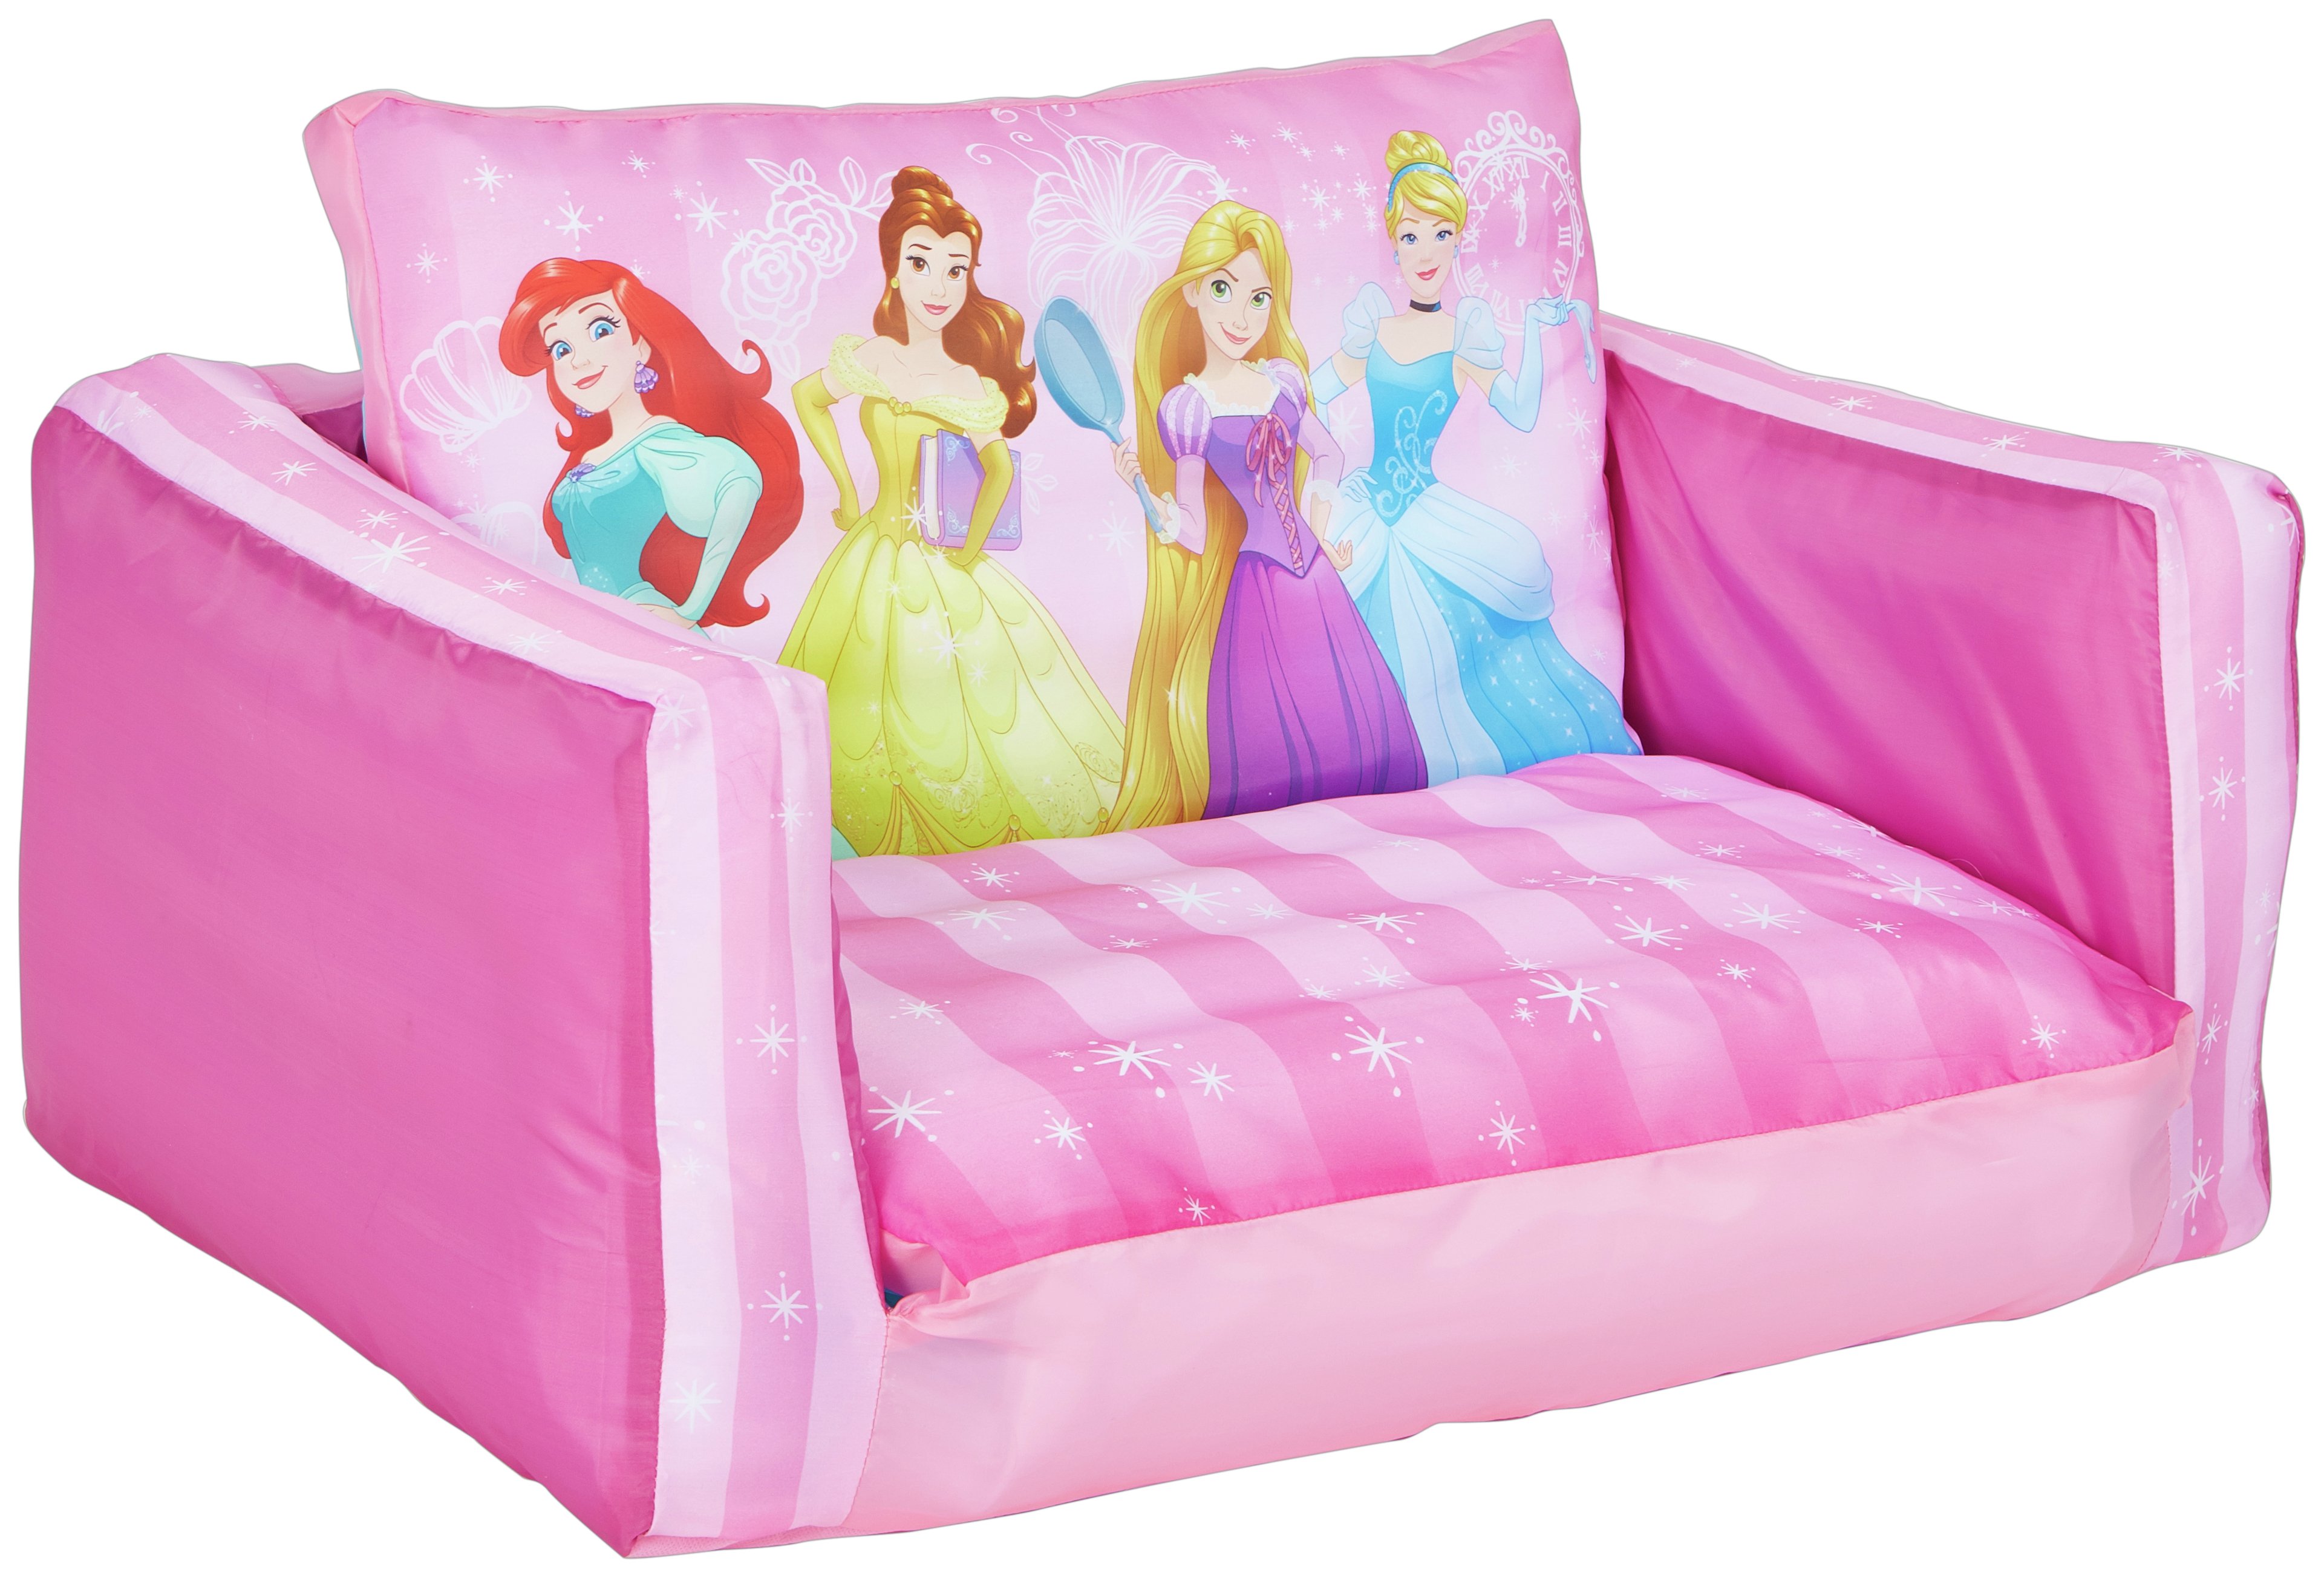 Disney Princess Junior Flip Out Sofa.